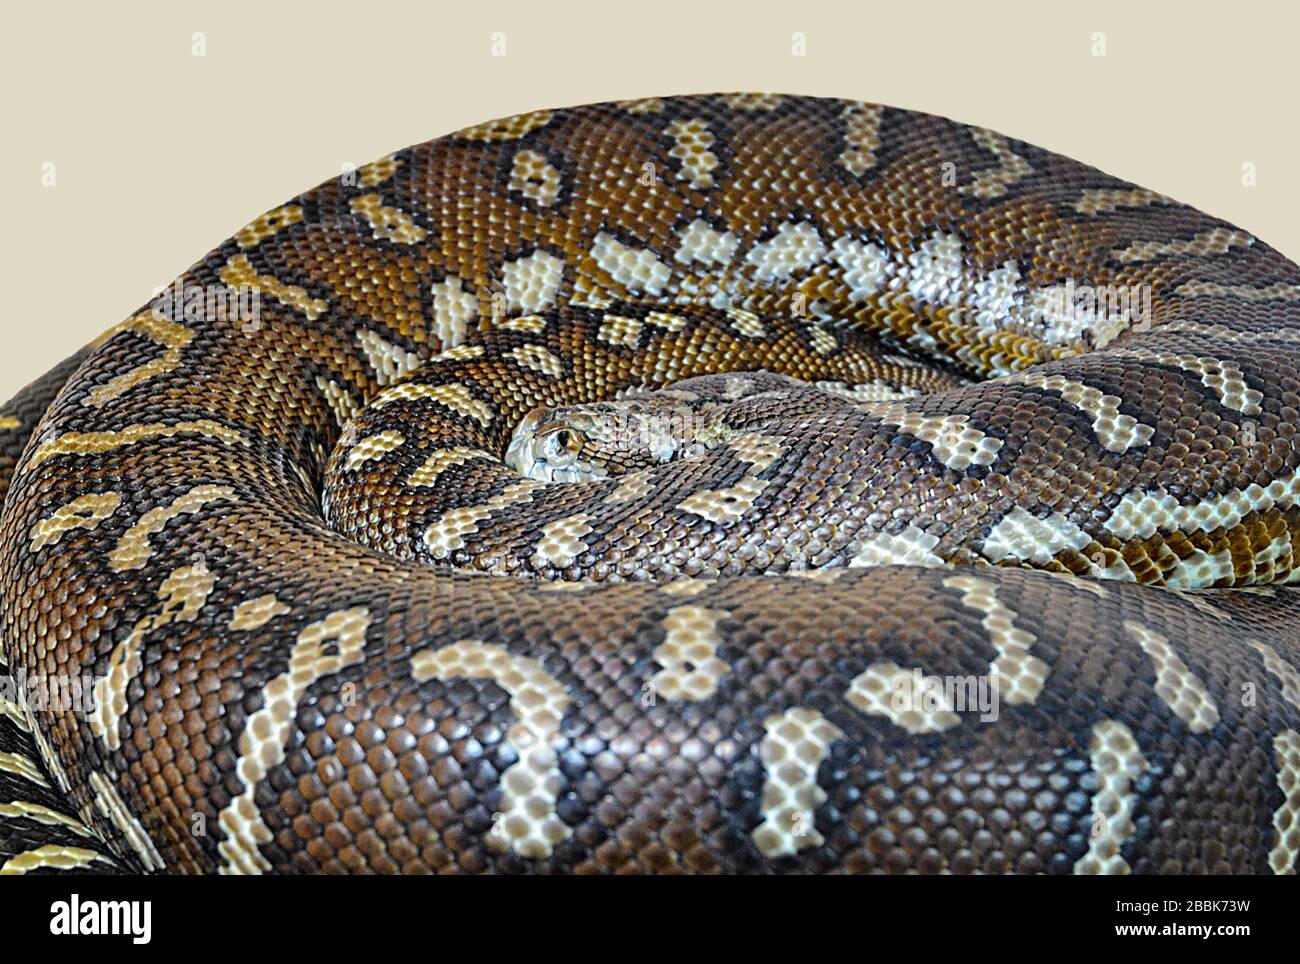 Tapis Python (Morelia spilota bredli) courbé, Australie Banque D'Images